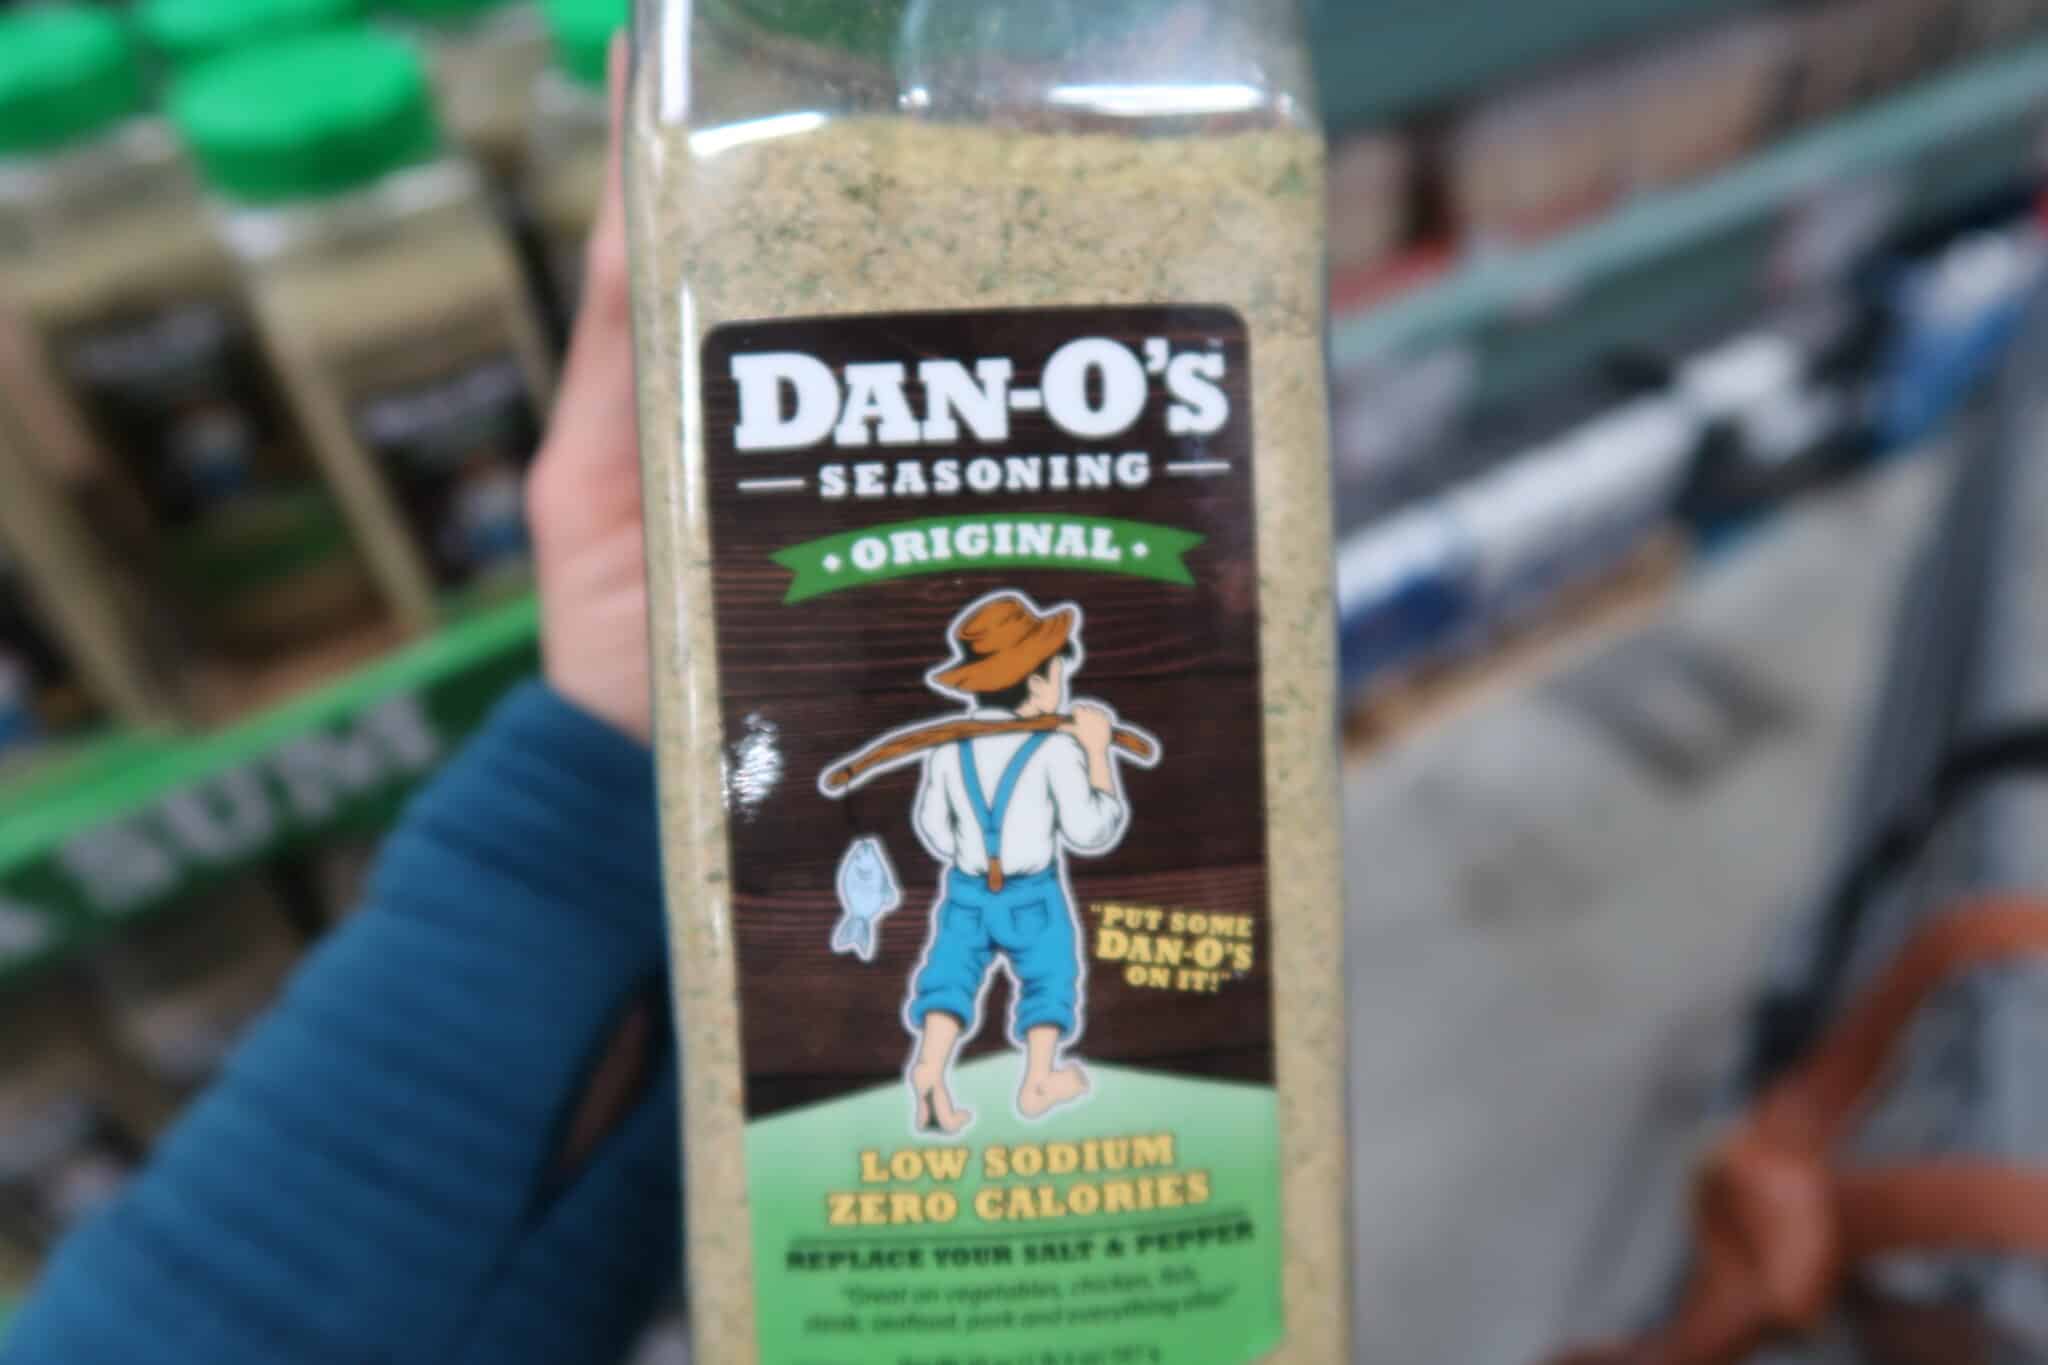 New Coupon For Dan-O’s Original Seasoning